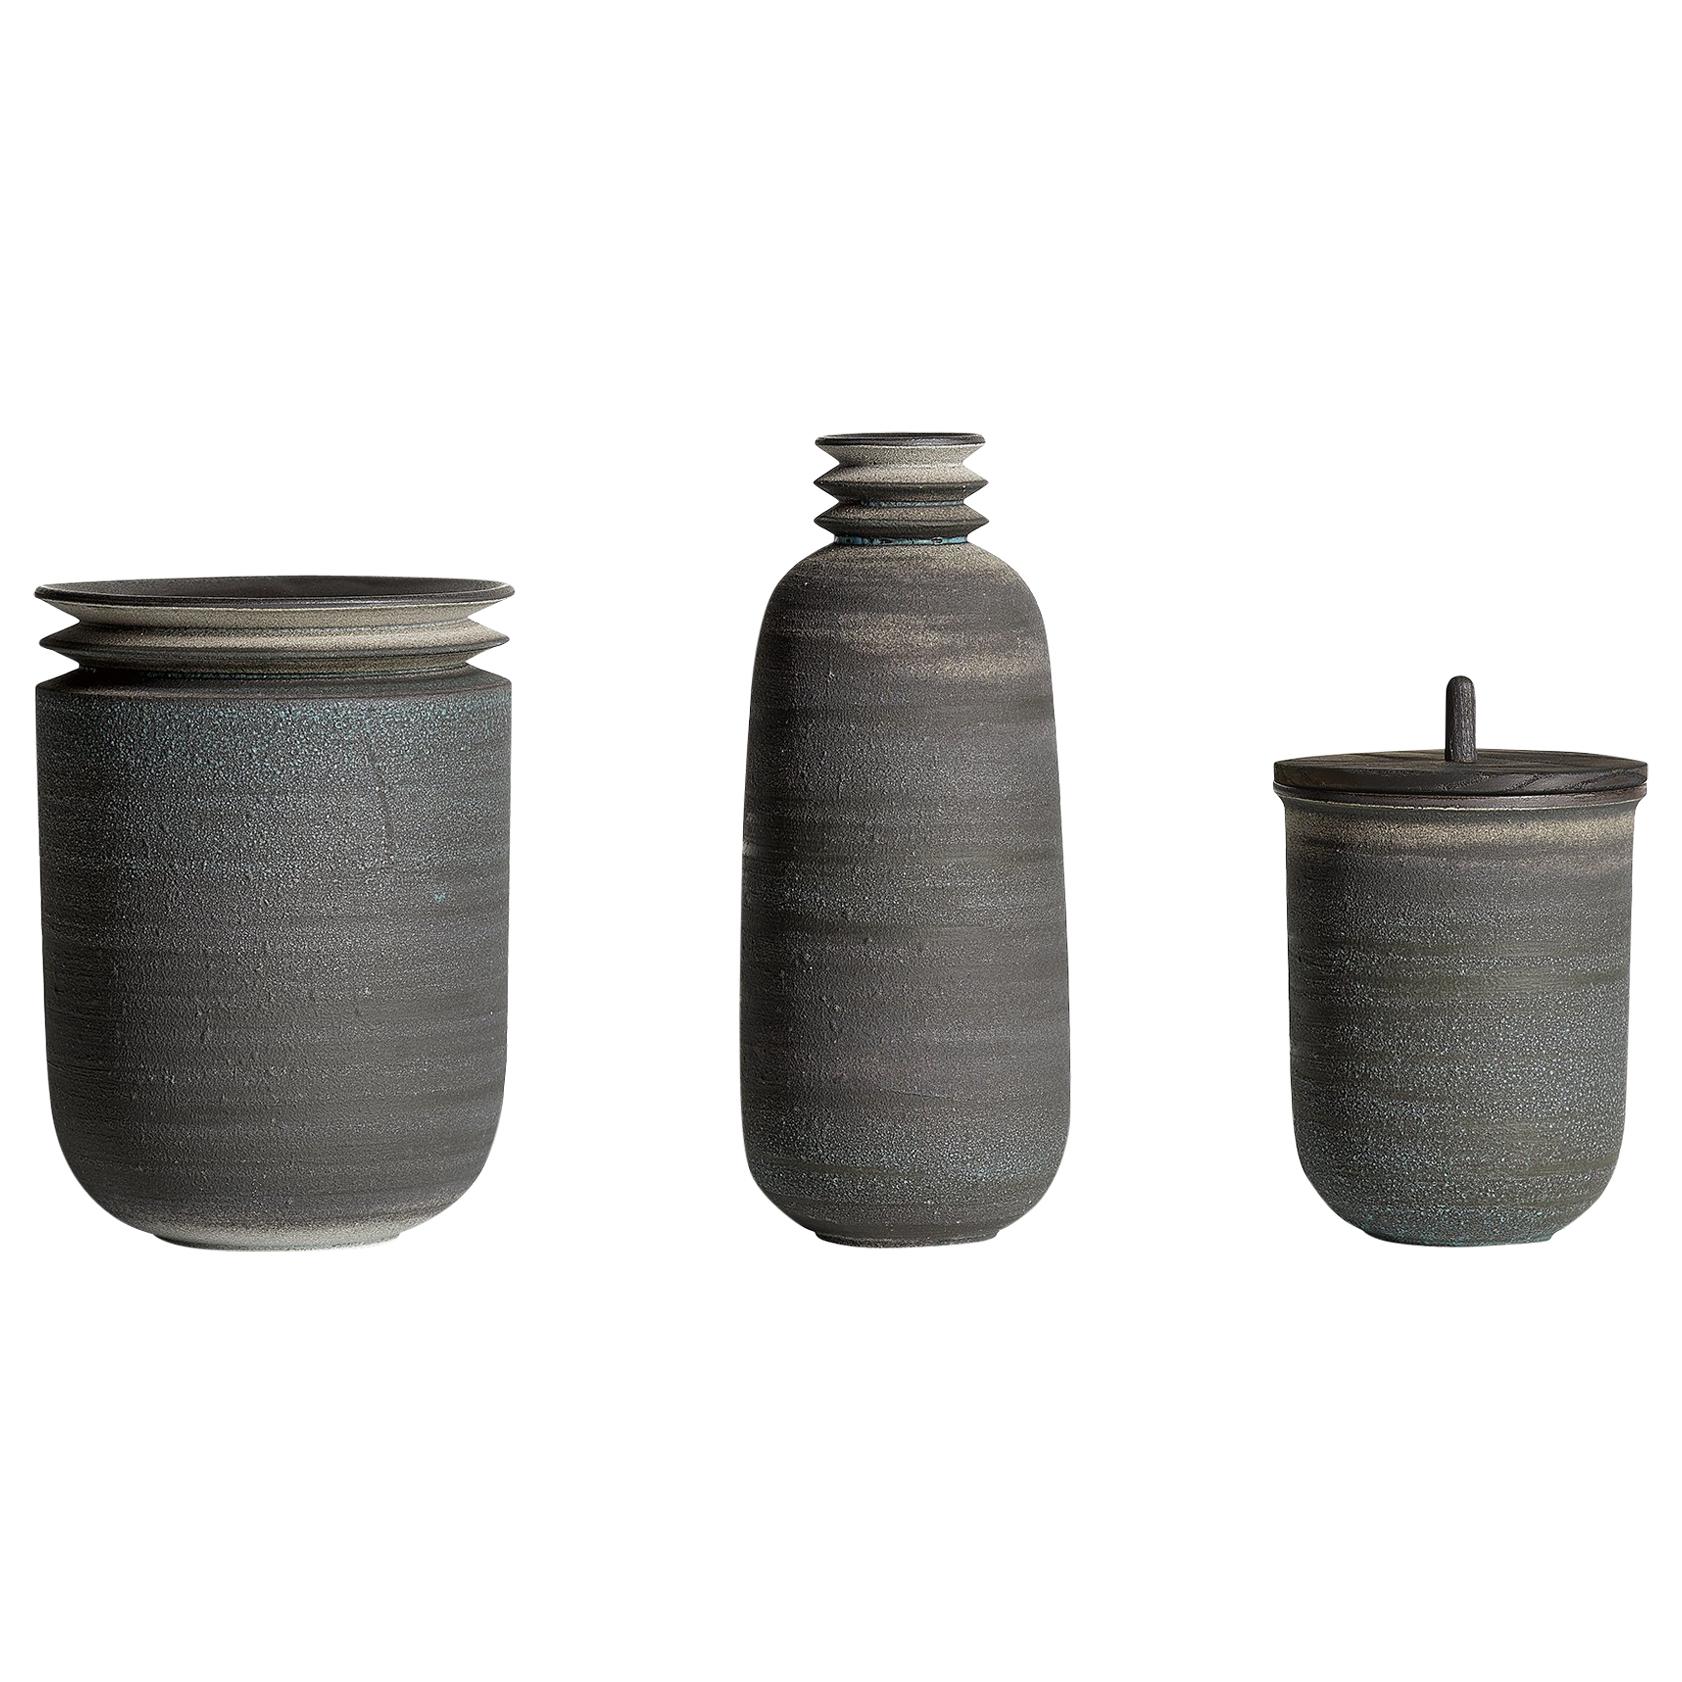 Strata, Vessels, Set of 3, Slip Cast Ceramic, N/O Vessels Collection For Sale